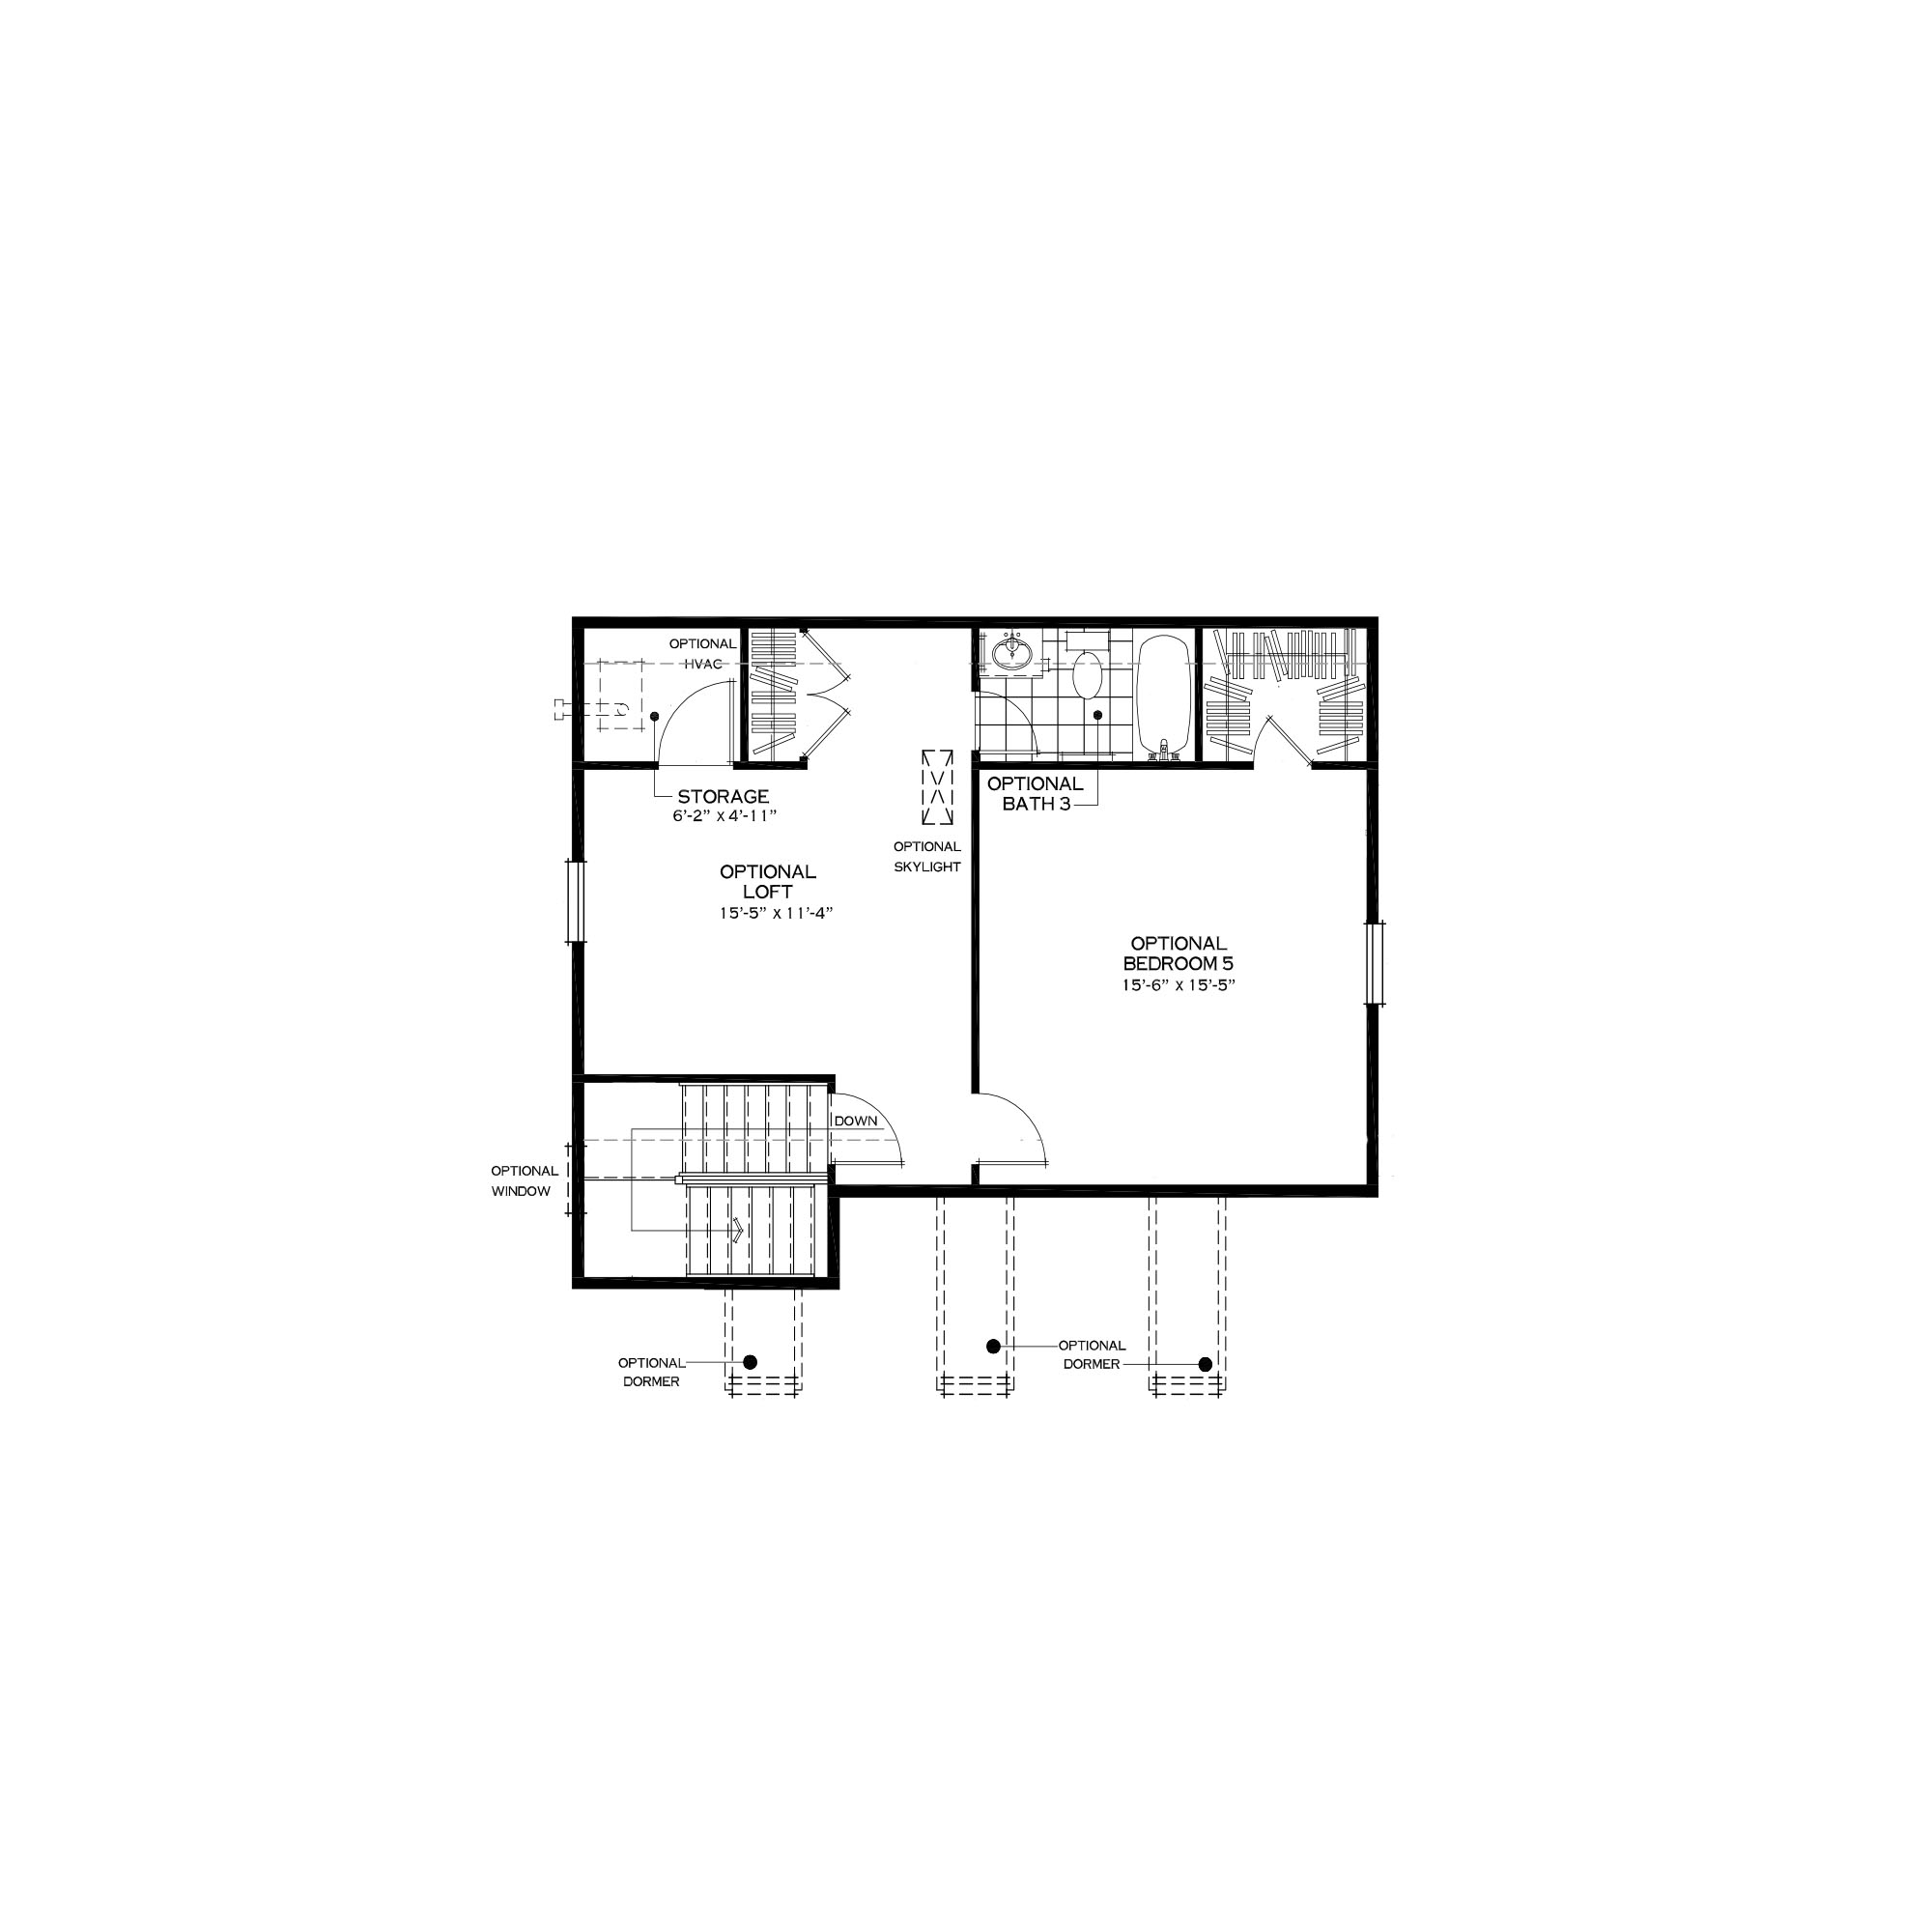 Optional Third Floor Loft with Bedroom Suite